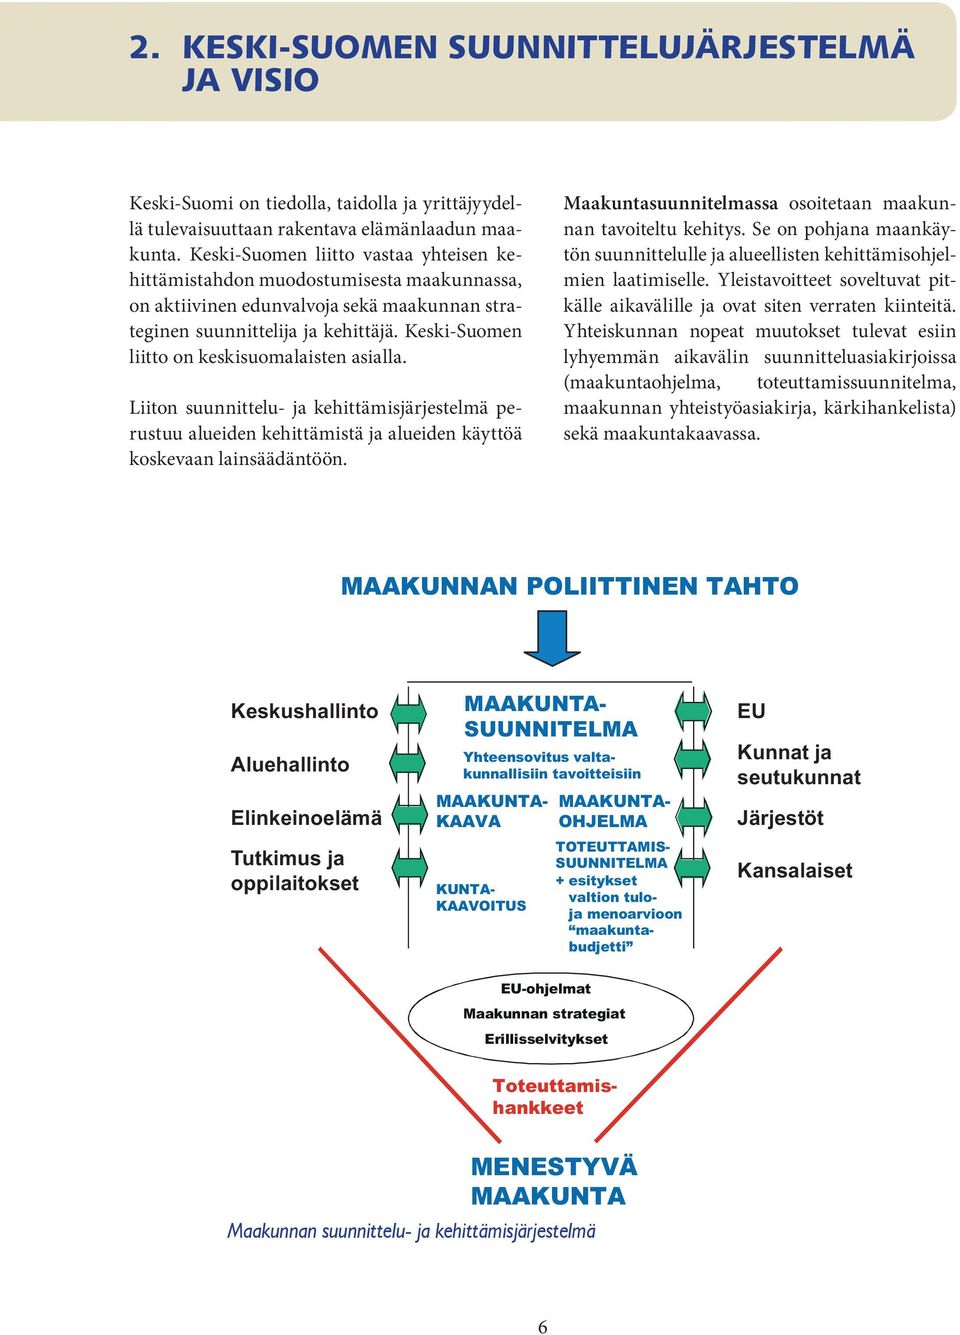 Keski-Suomen liitto on keskisuomalaisten asialla. Liiton suunnittelu- ja kehittämisjärjestelmä perustuu alueiden kehittämistä ja alueiden käyttöä koskevaan lainsäädäntöön.